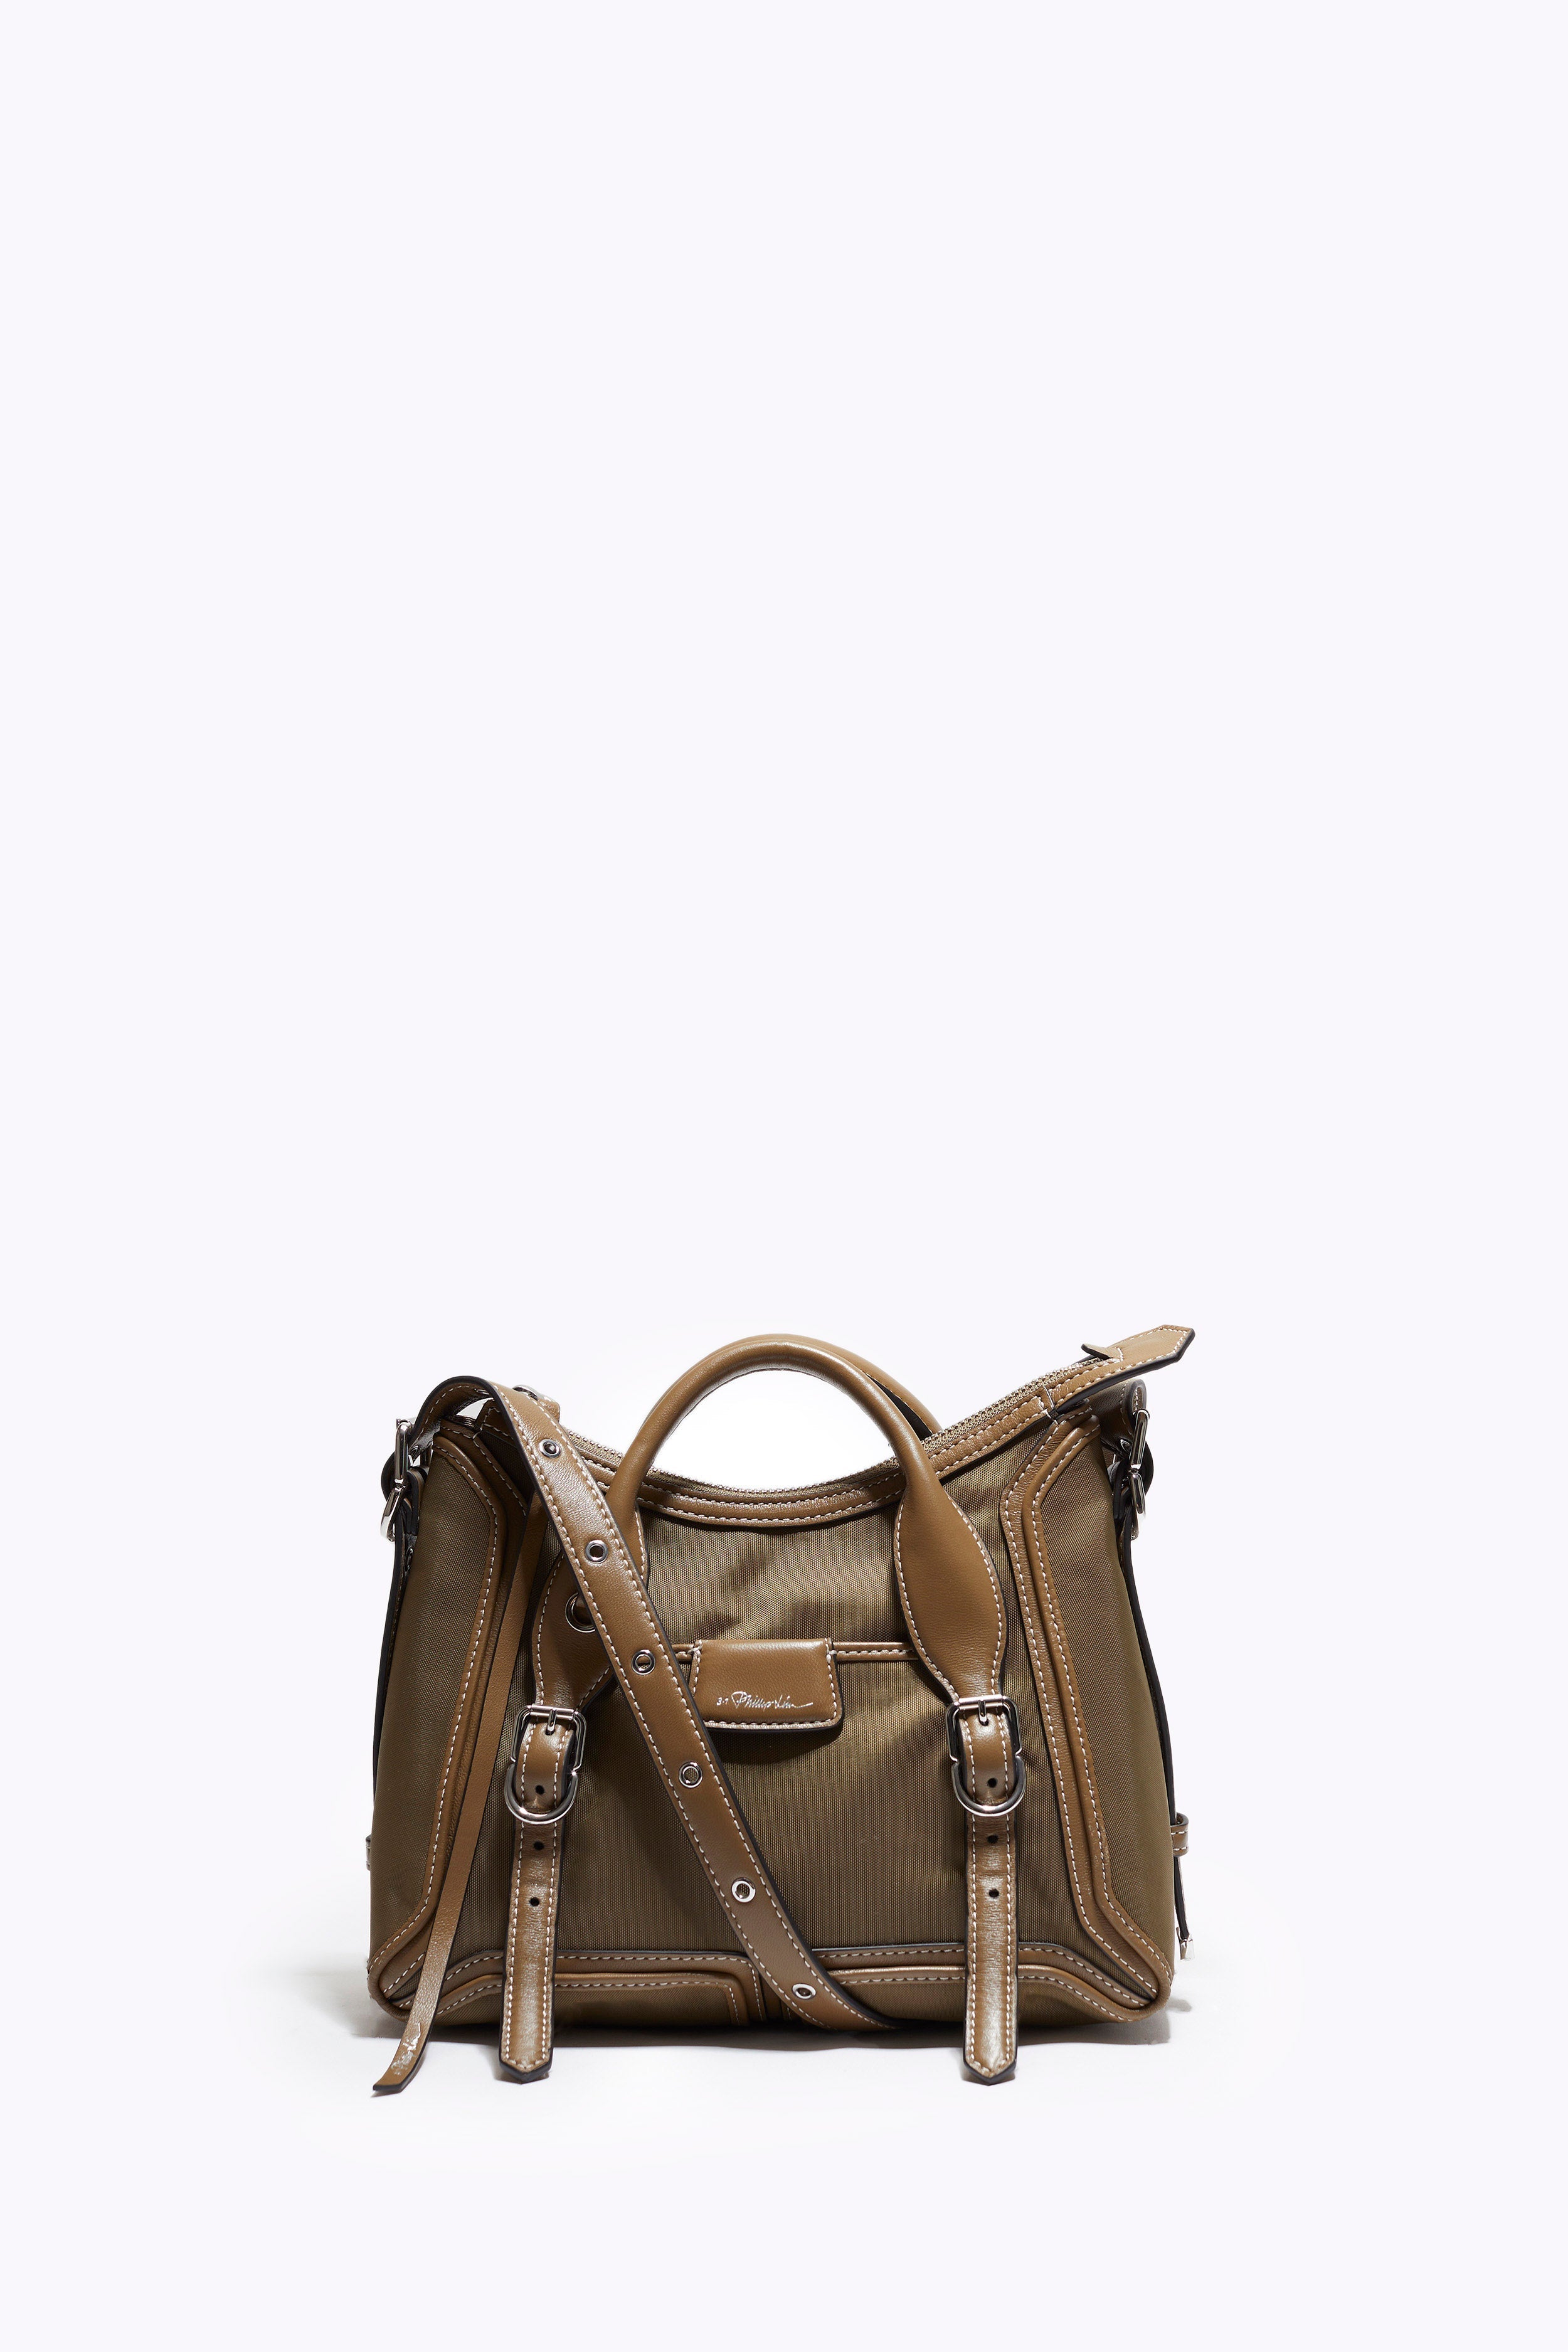 3.1 Phillip Lim Large Pashli Bag - Burgundy Handle Bags, Handbags -  W31PH144181 | The RealReal